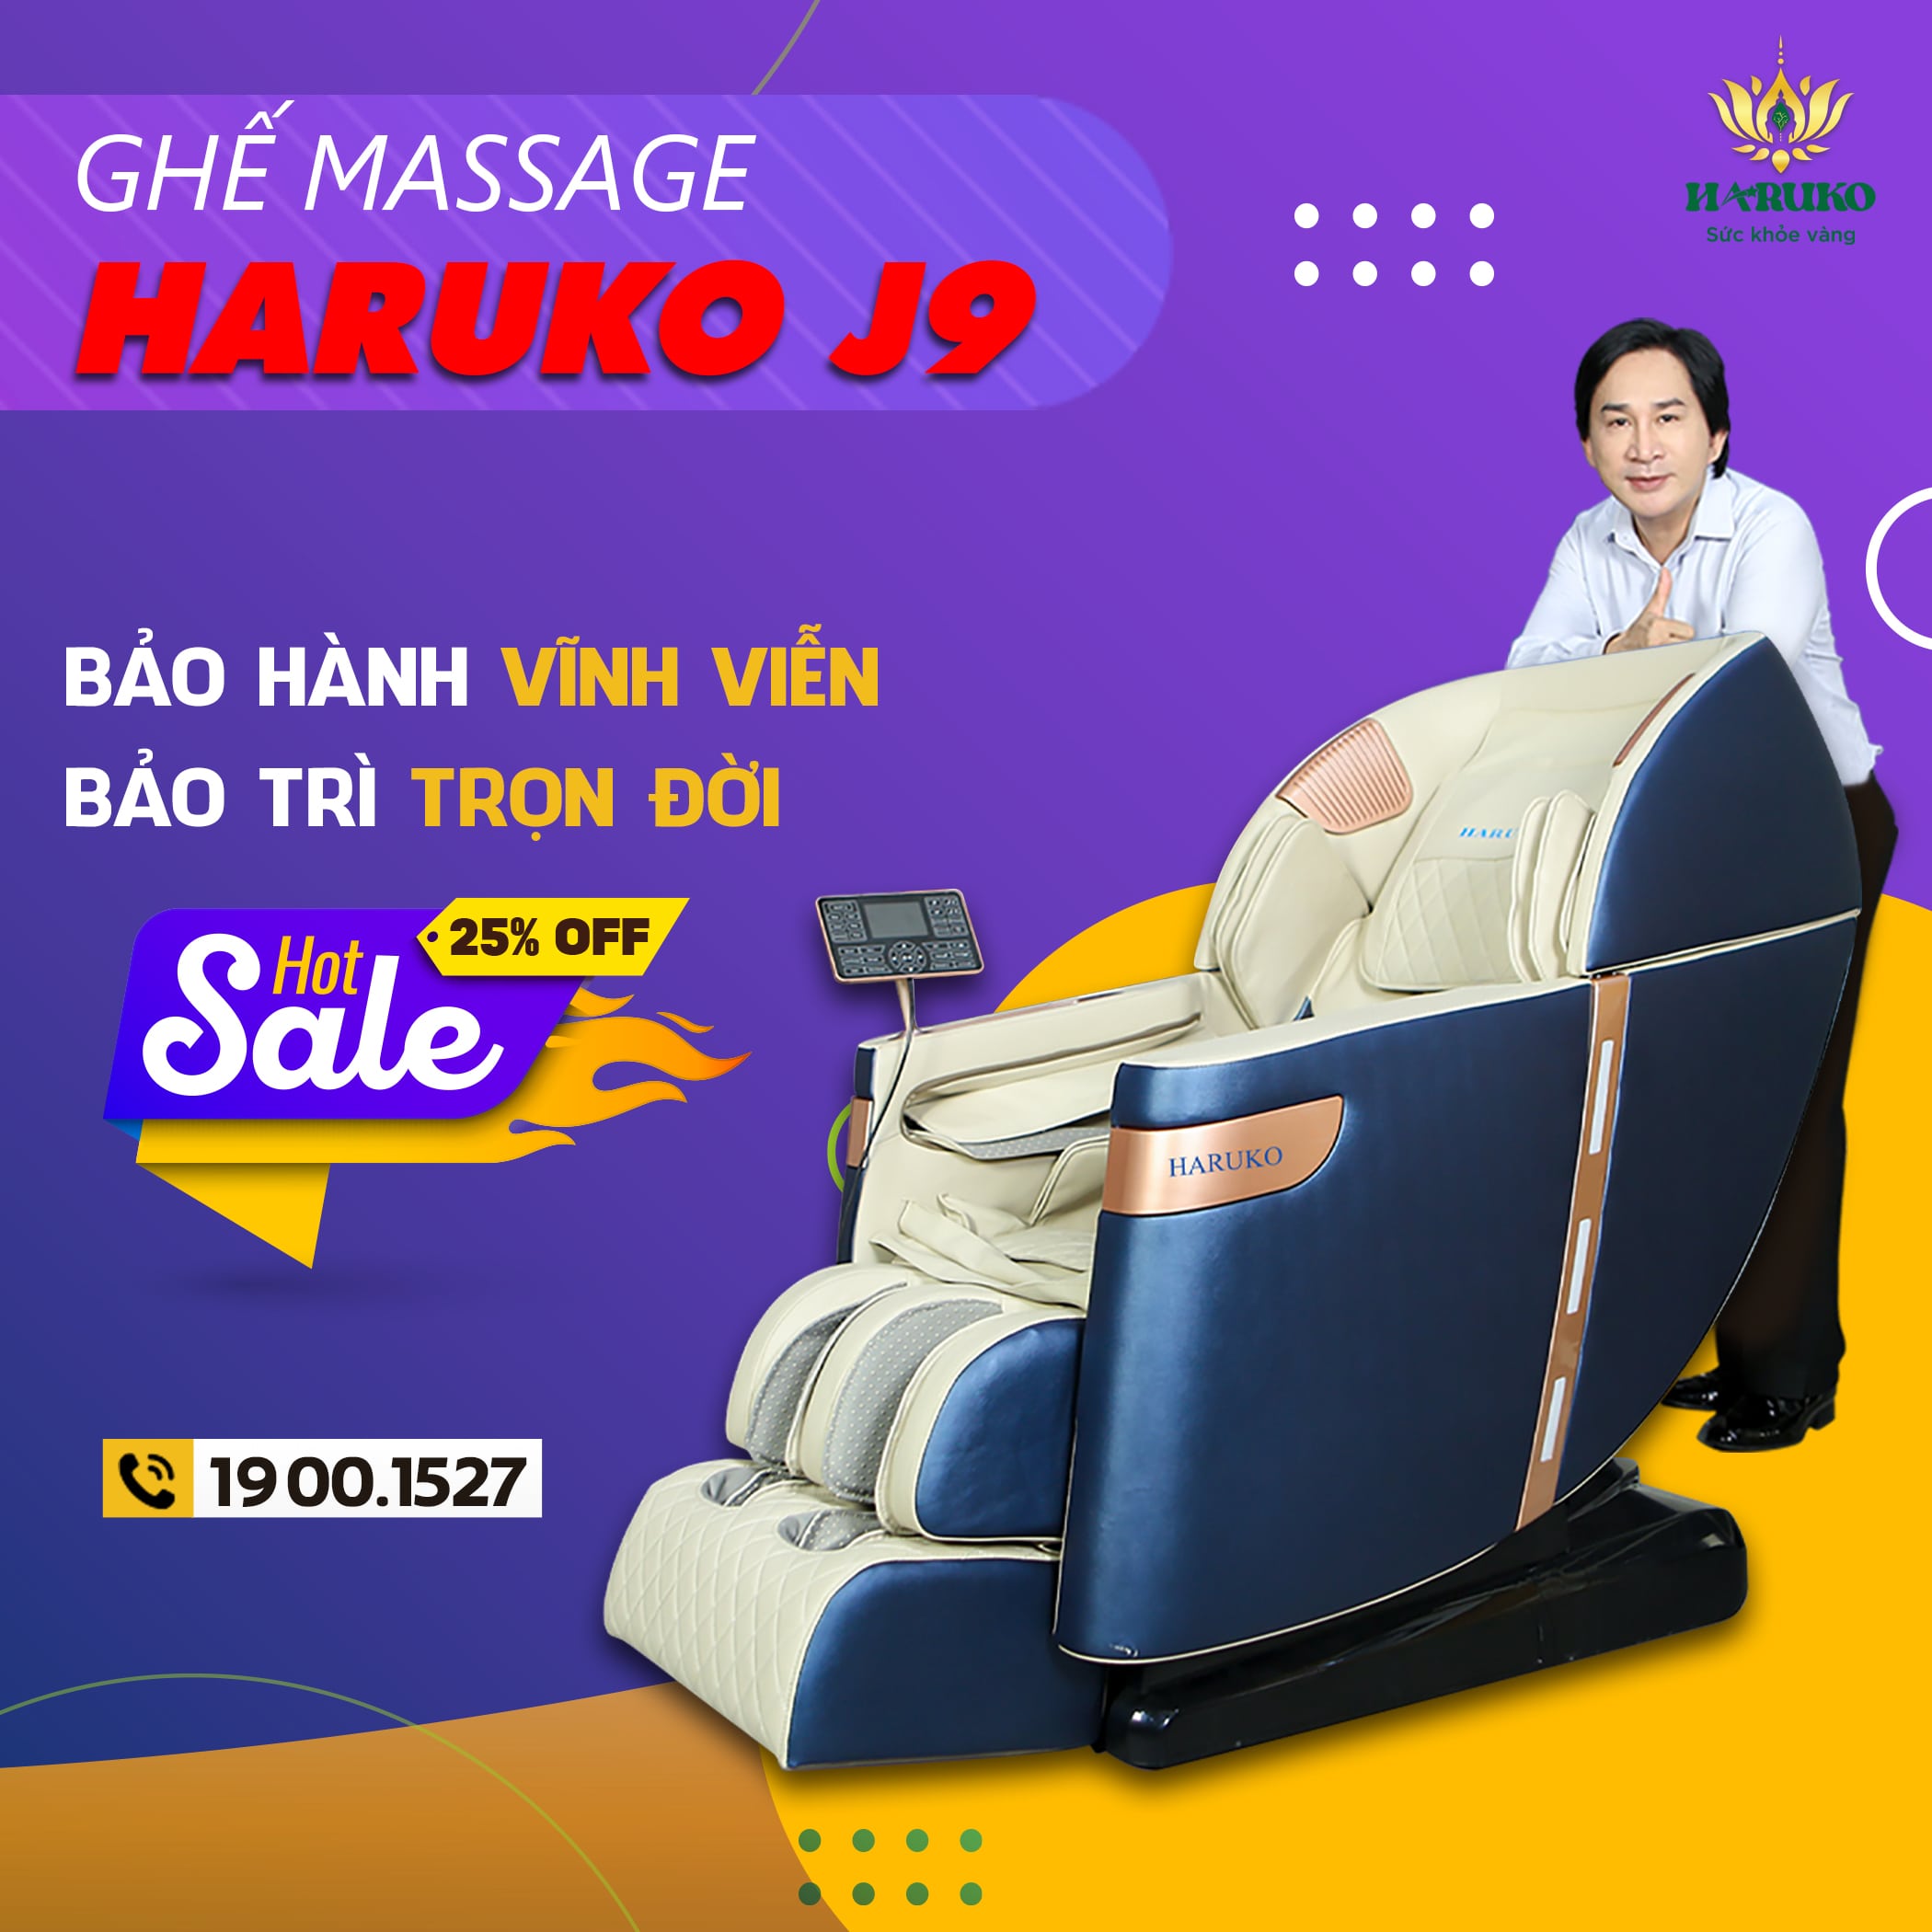 Ghế massage Haruko-J9 được tích hợp công nghệ scan body cùng thiết kế hiện đại là lựa chọn tuyệt vời dành cho bạn